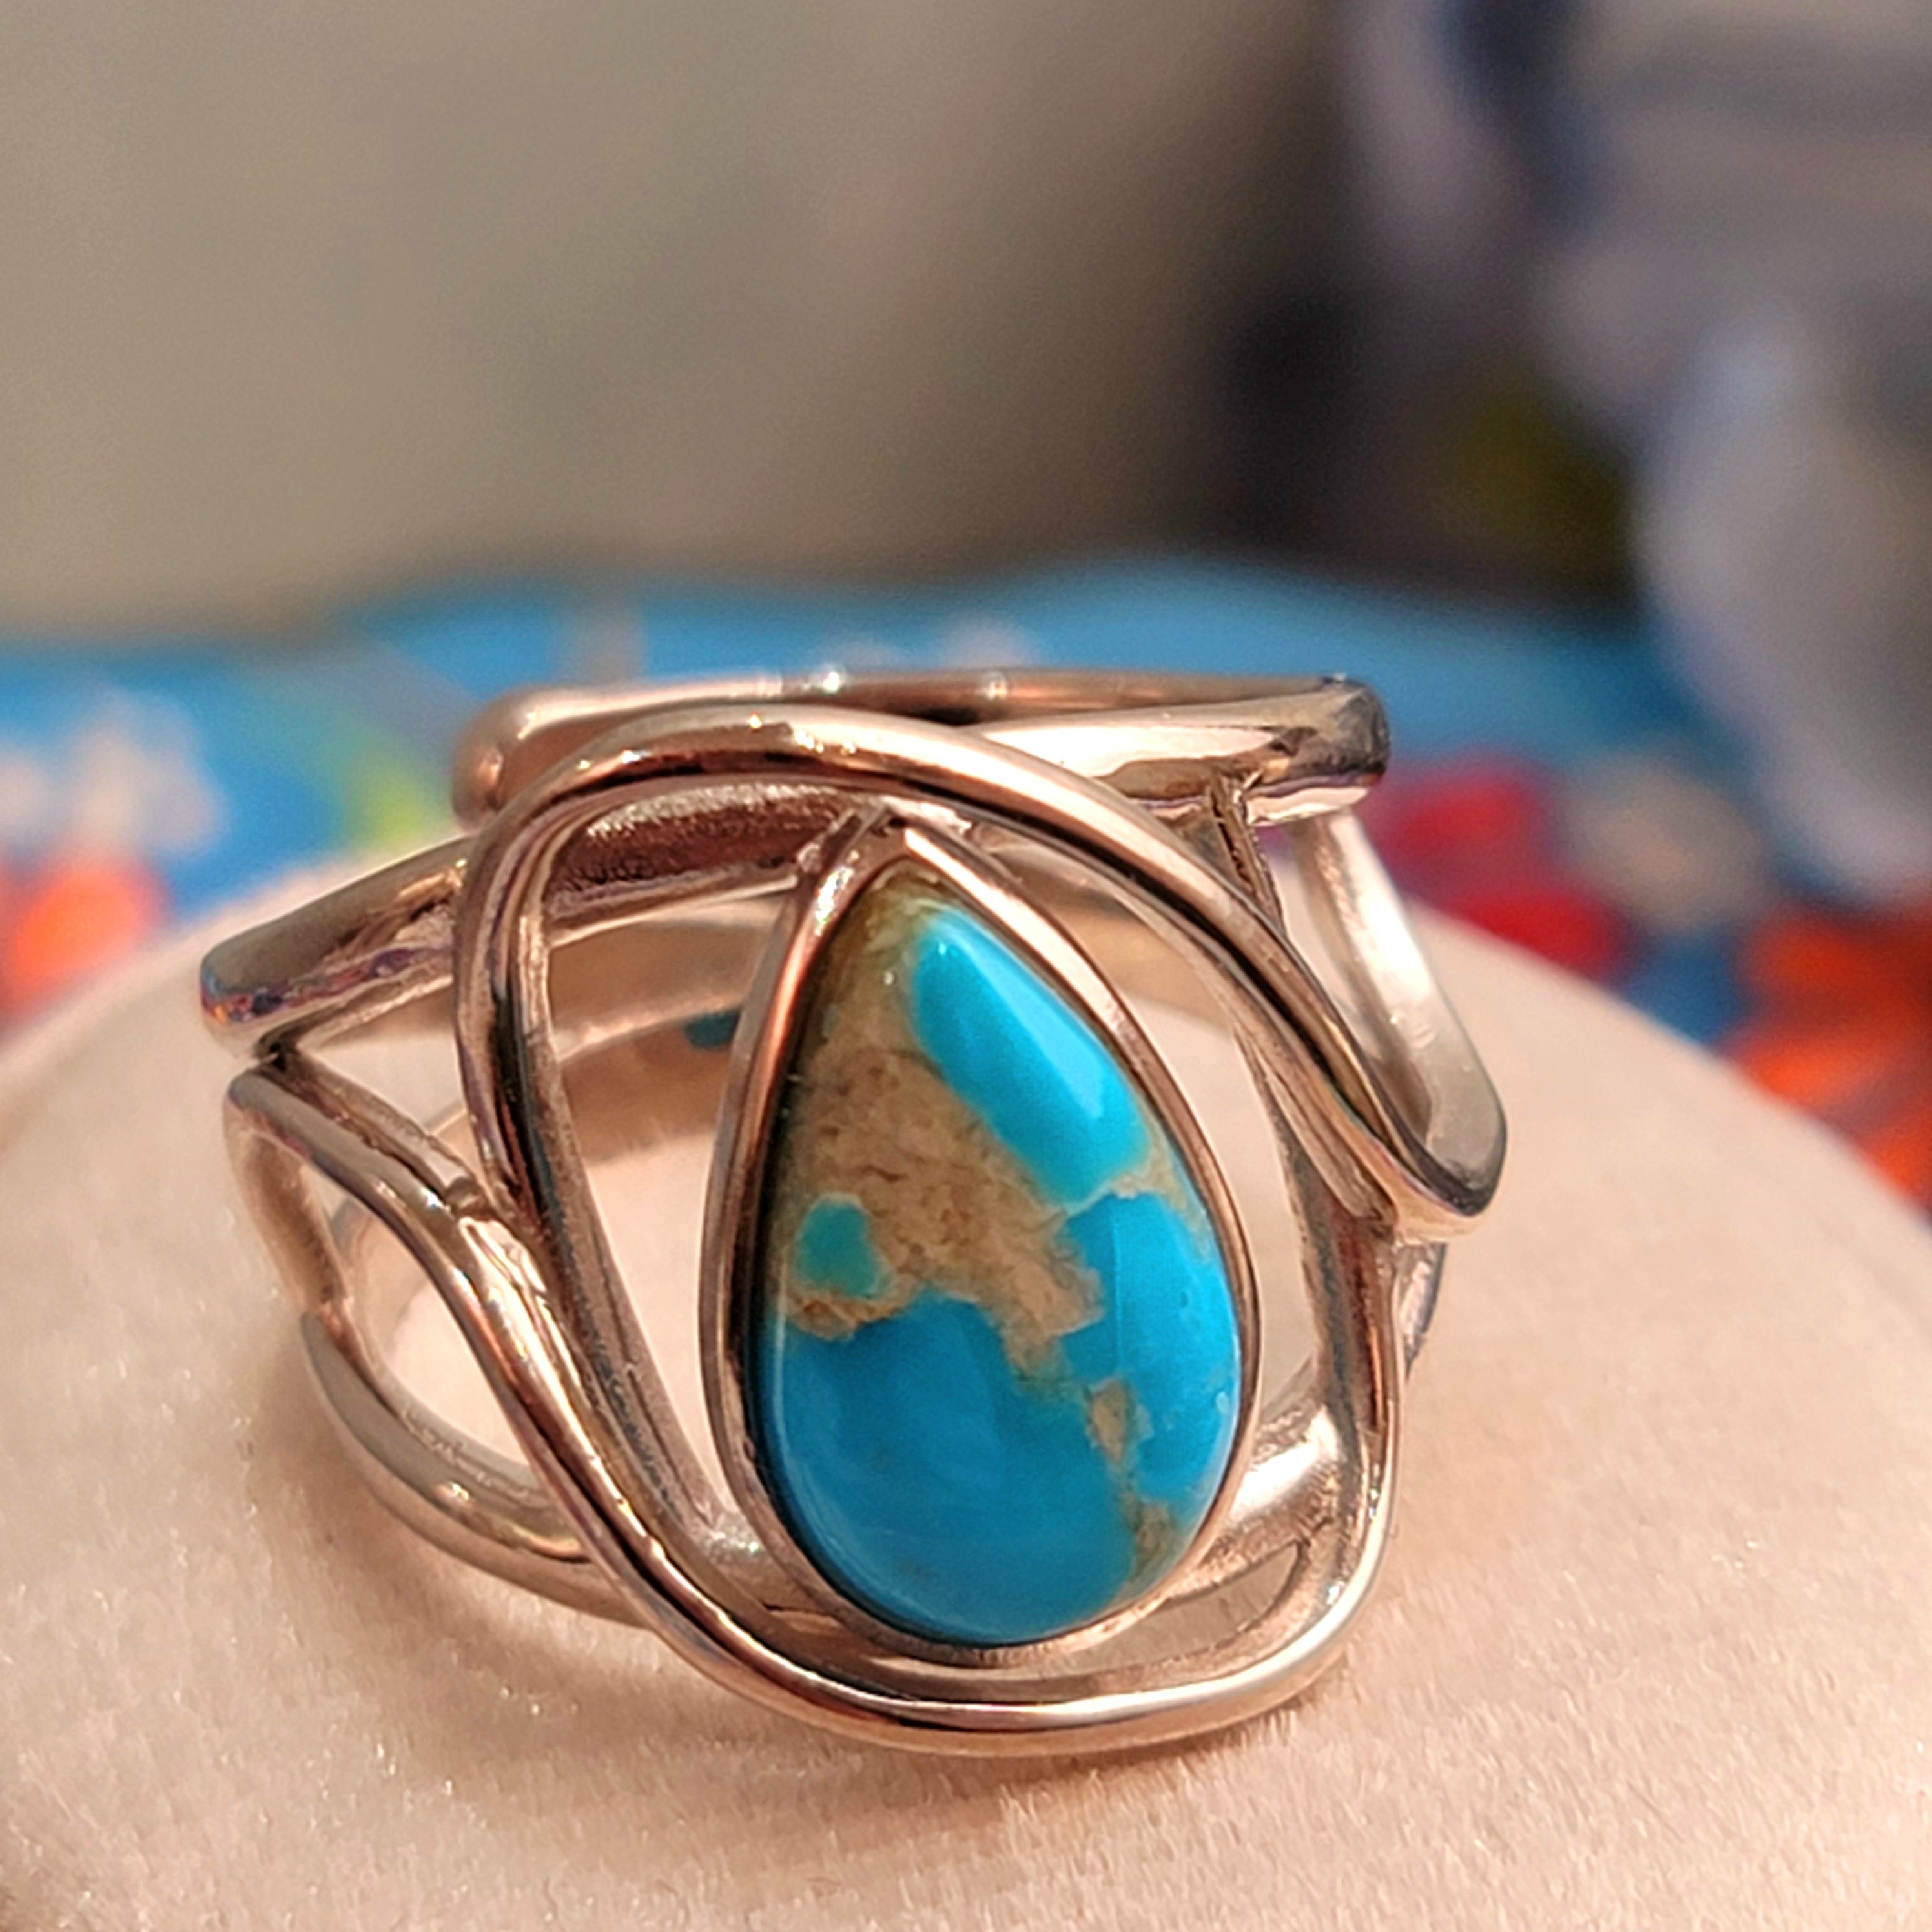 Kingman Turquoise Finger Bracelet for Good Luck, Prosperity and Protection